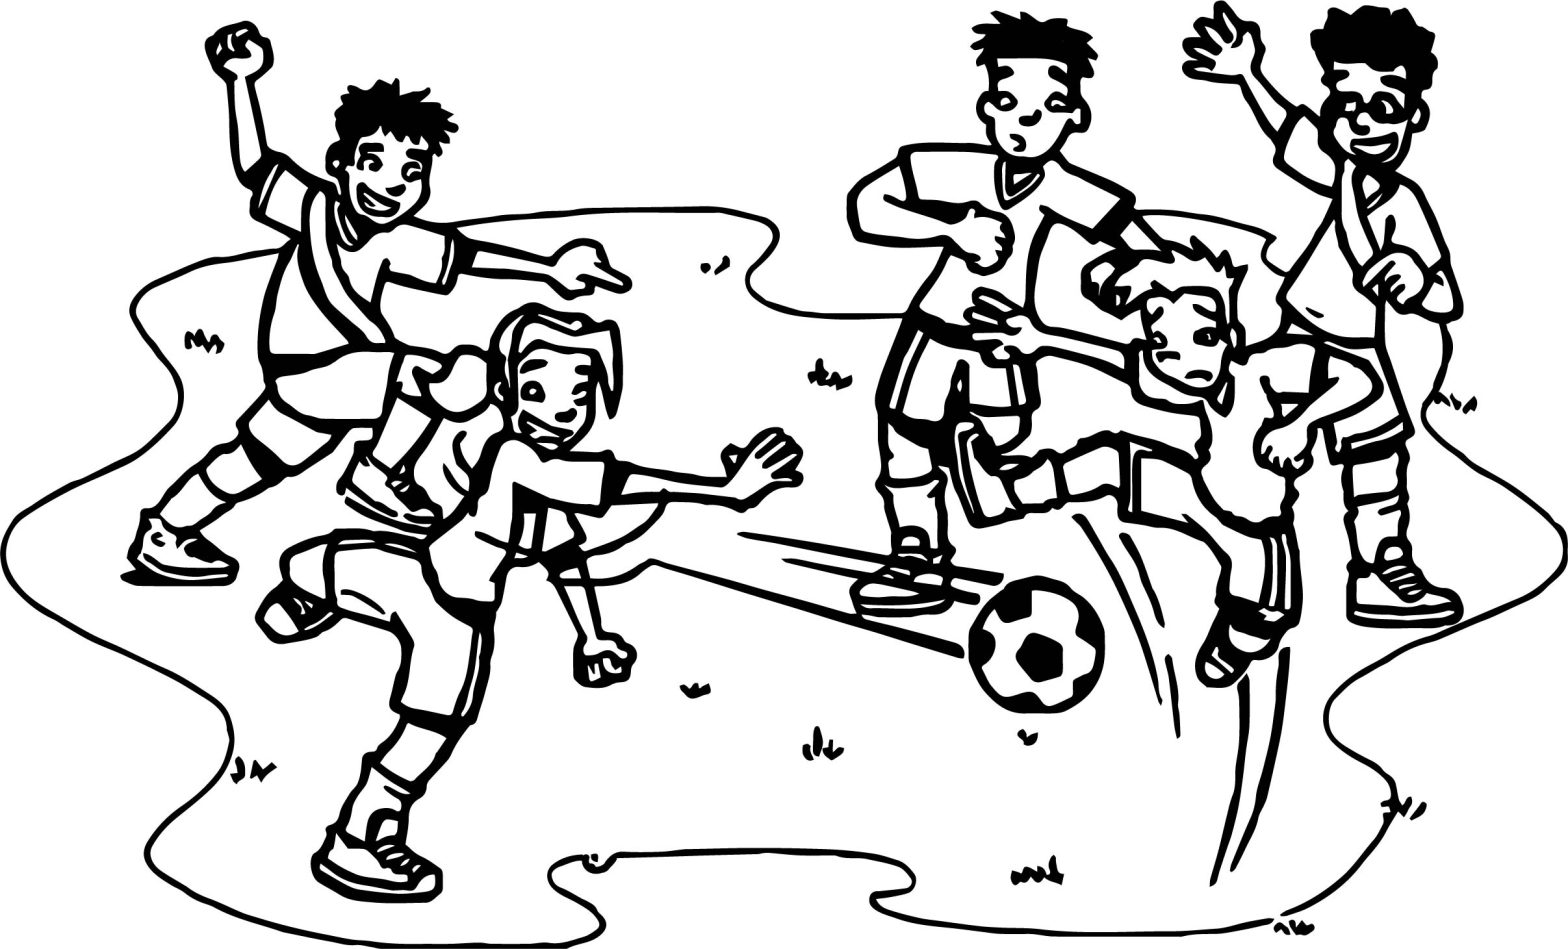 Раскраски по спортивным играм: футбольный мяч (цвета)